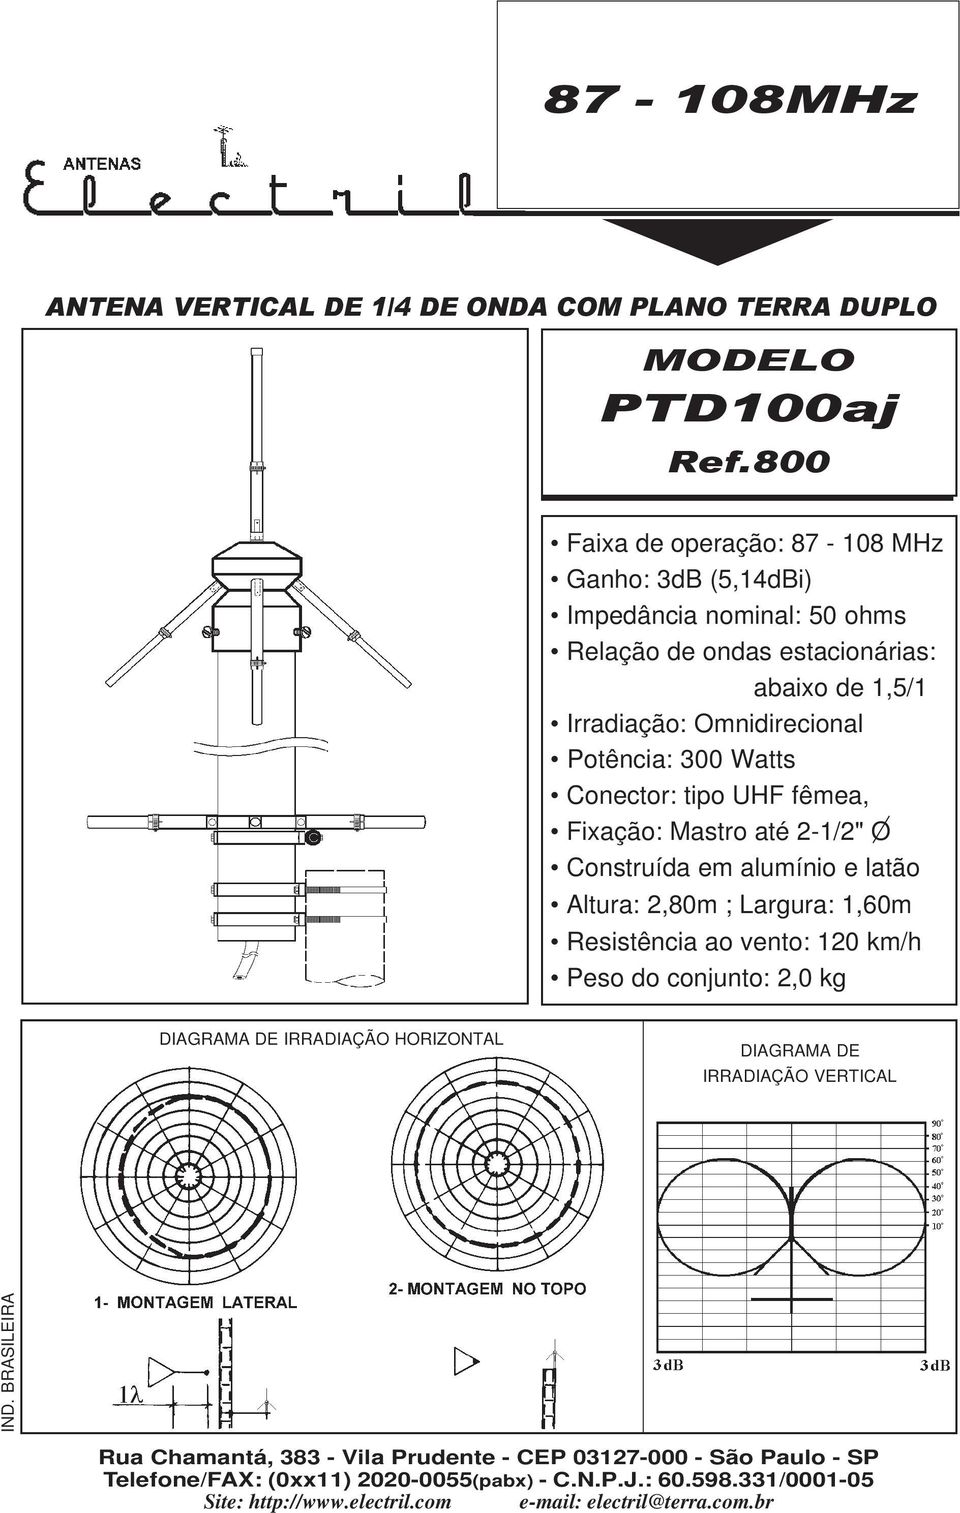 Watts Conector: tipo UHF fêmea, Fixação: Mastro até 2-1/2" O Constrída em almínio e latão Altra: 2,80m ; Largra: 1,60m Resistência ao vento: 120